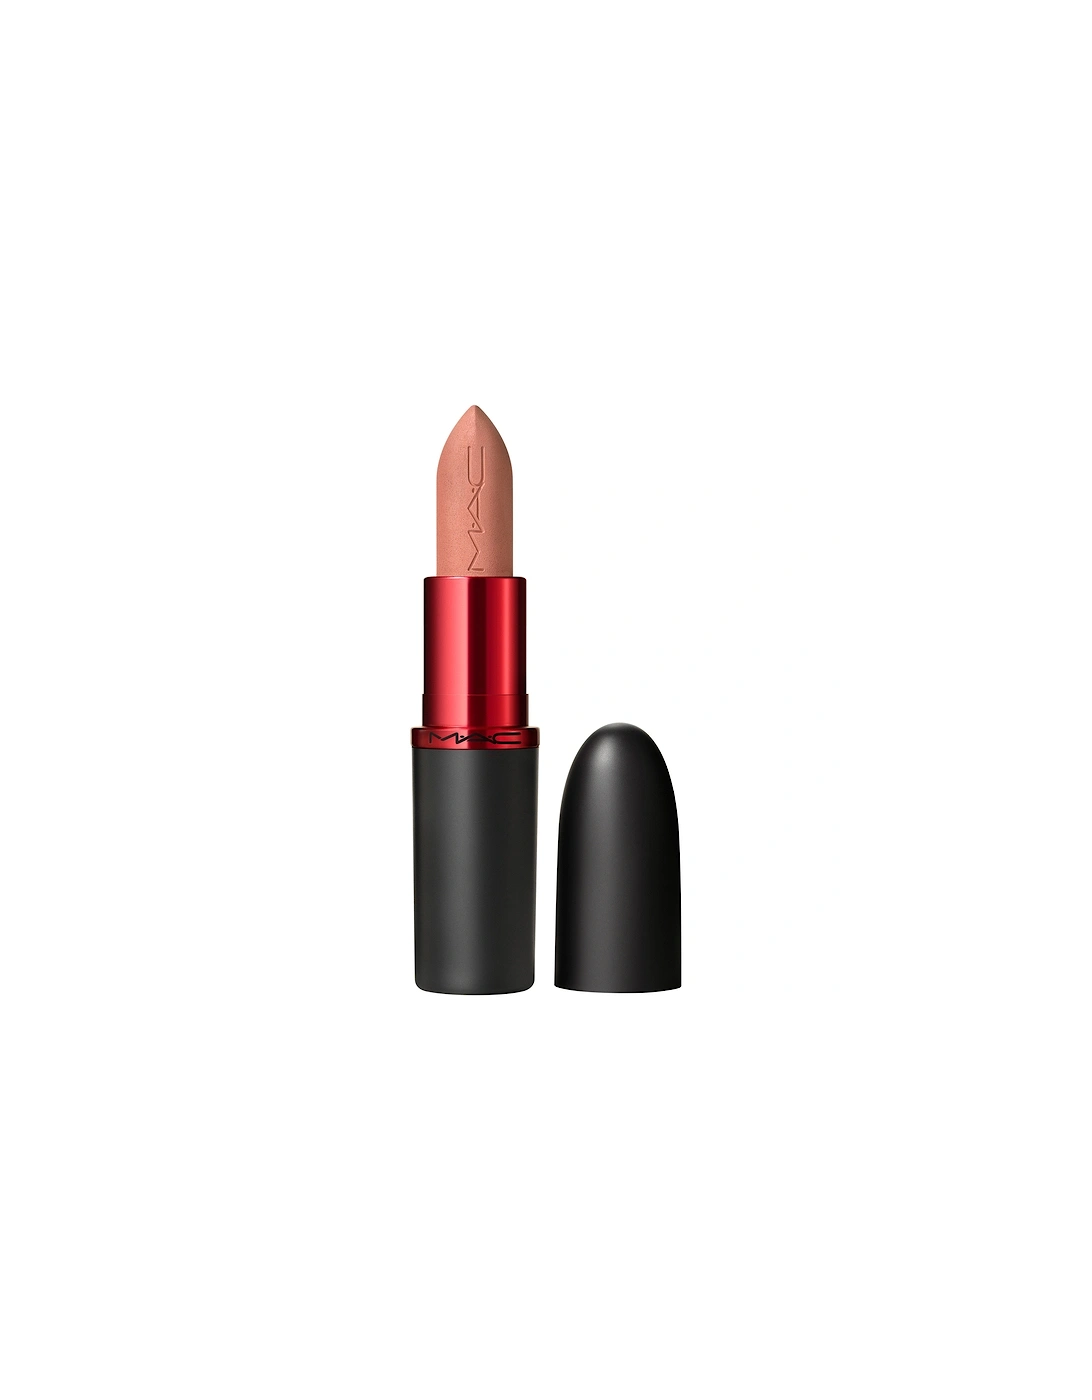 Macximal Matte Viva Glam Lipstick - Viva Planet, 2 of 1